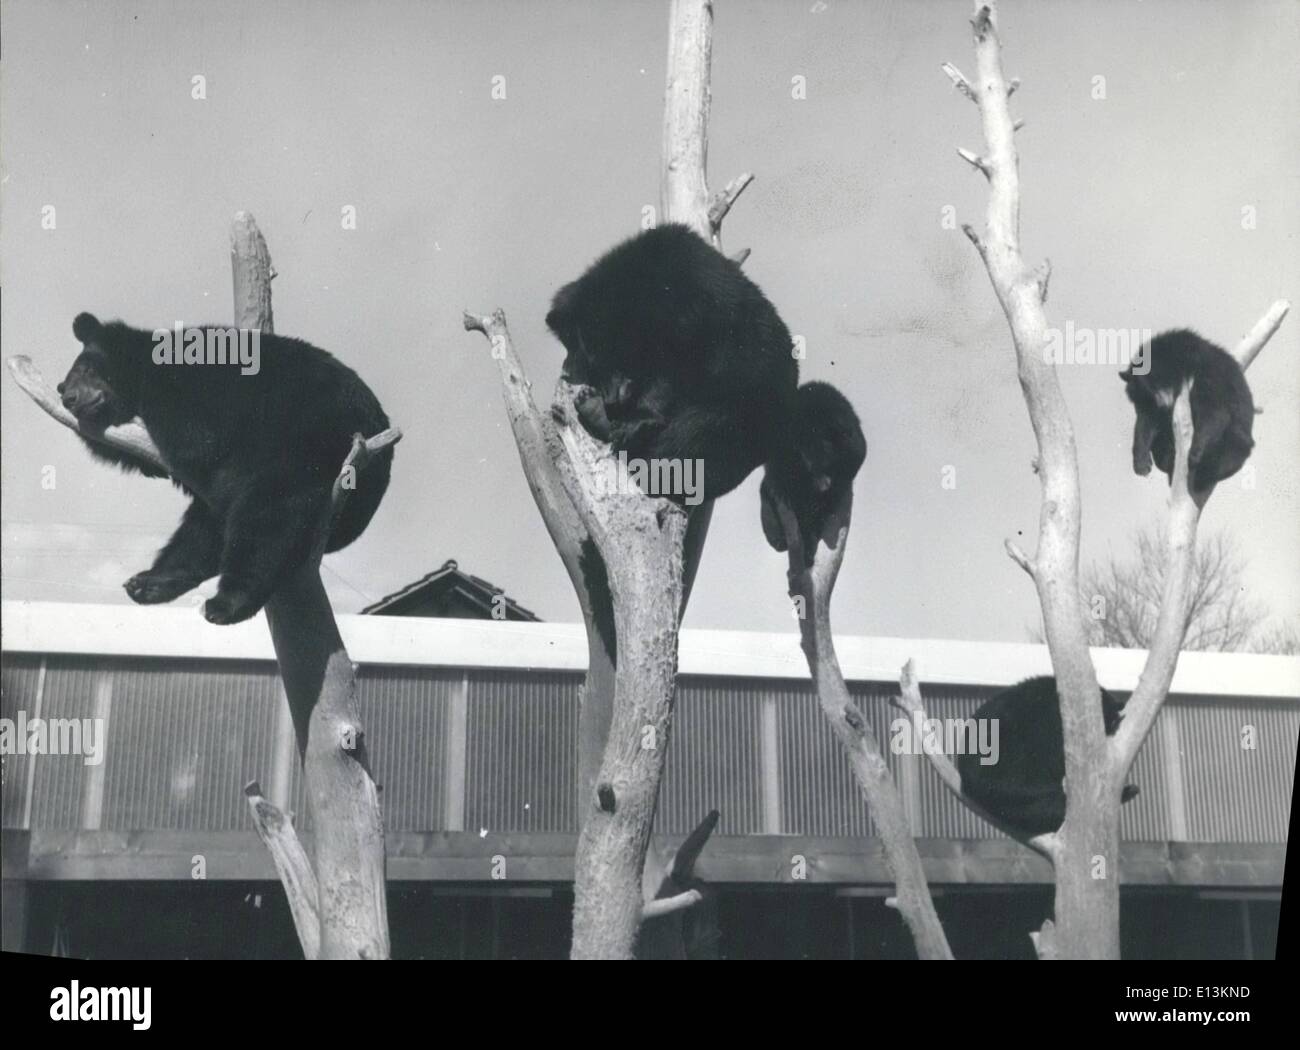 Mars 02, 2012 - Les ours bruns de l'après-midi : Au le petit jardin zoologique de Studen près de Bienne (Biel) germe;une petite couleur de l'ours brun a choisi d'accrocher endormi sur les arbres pour leur après-midi-pan. Banque D'Images